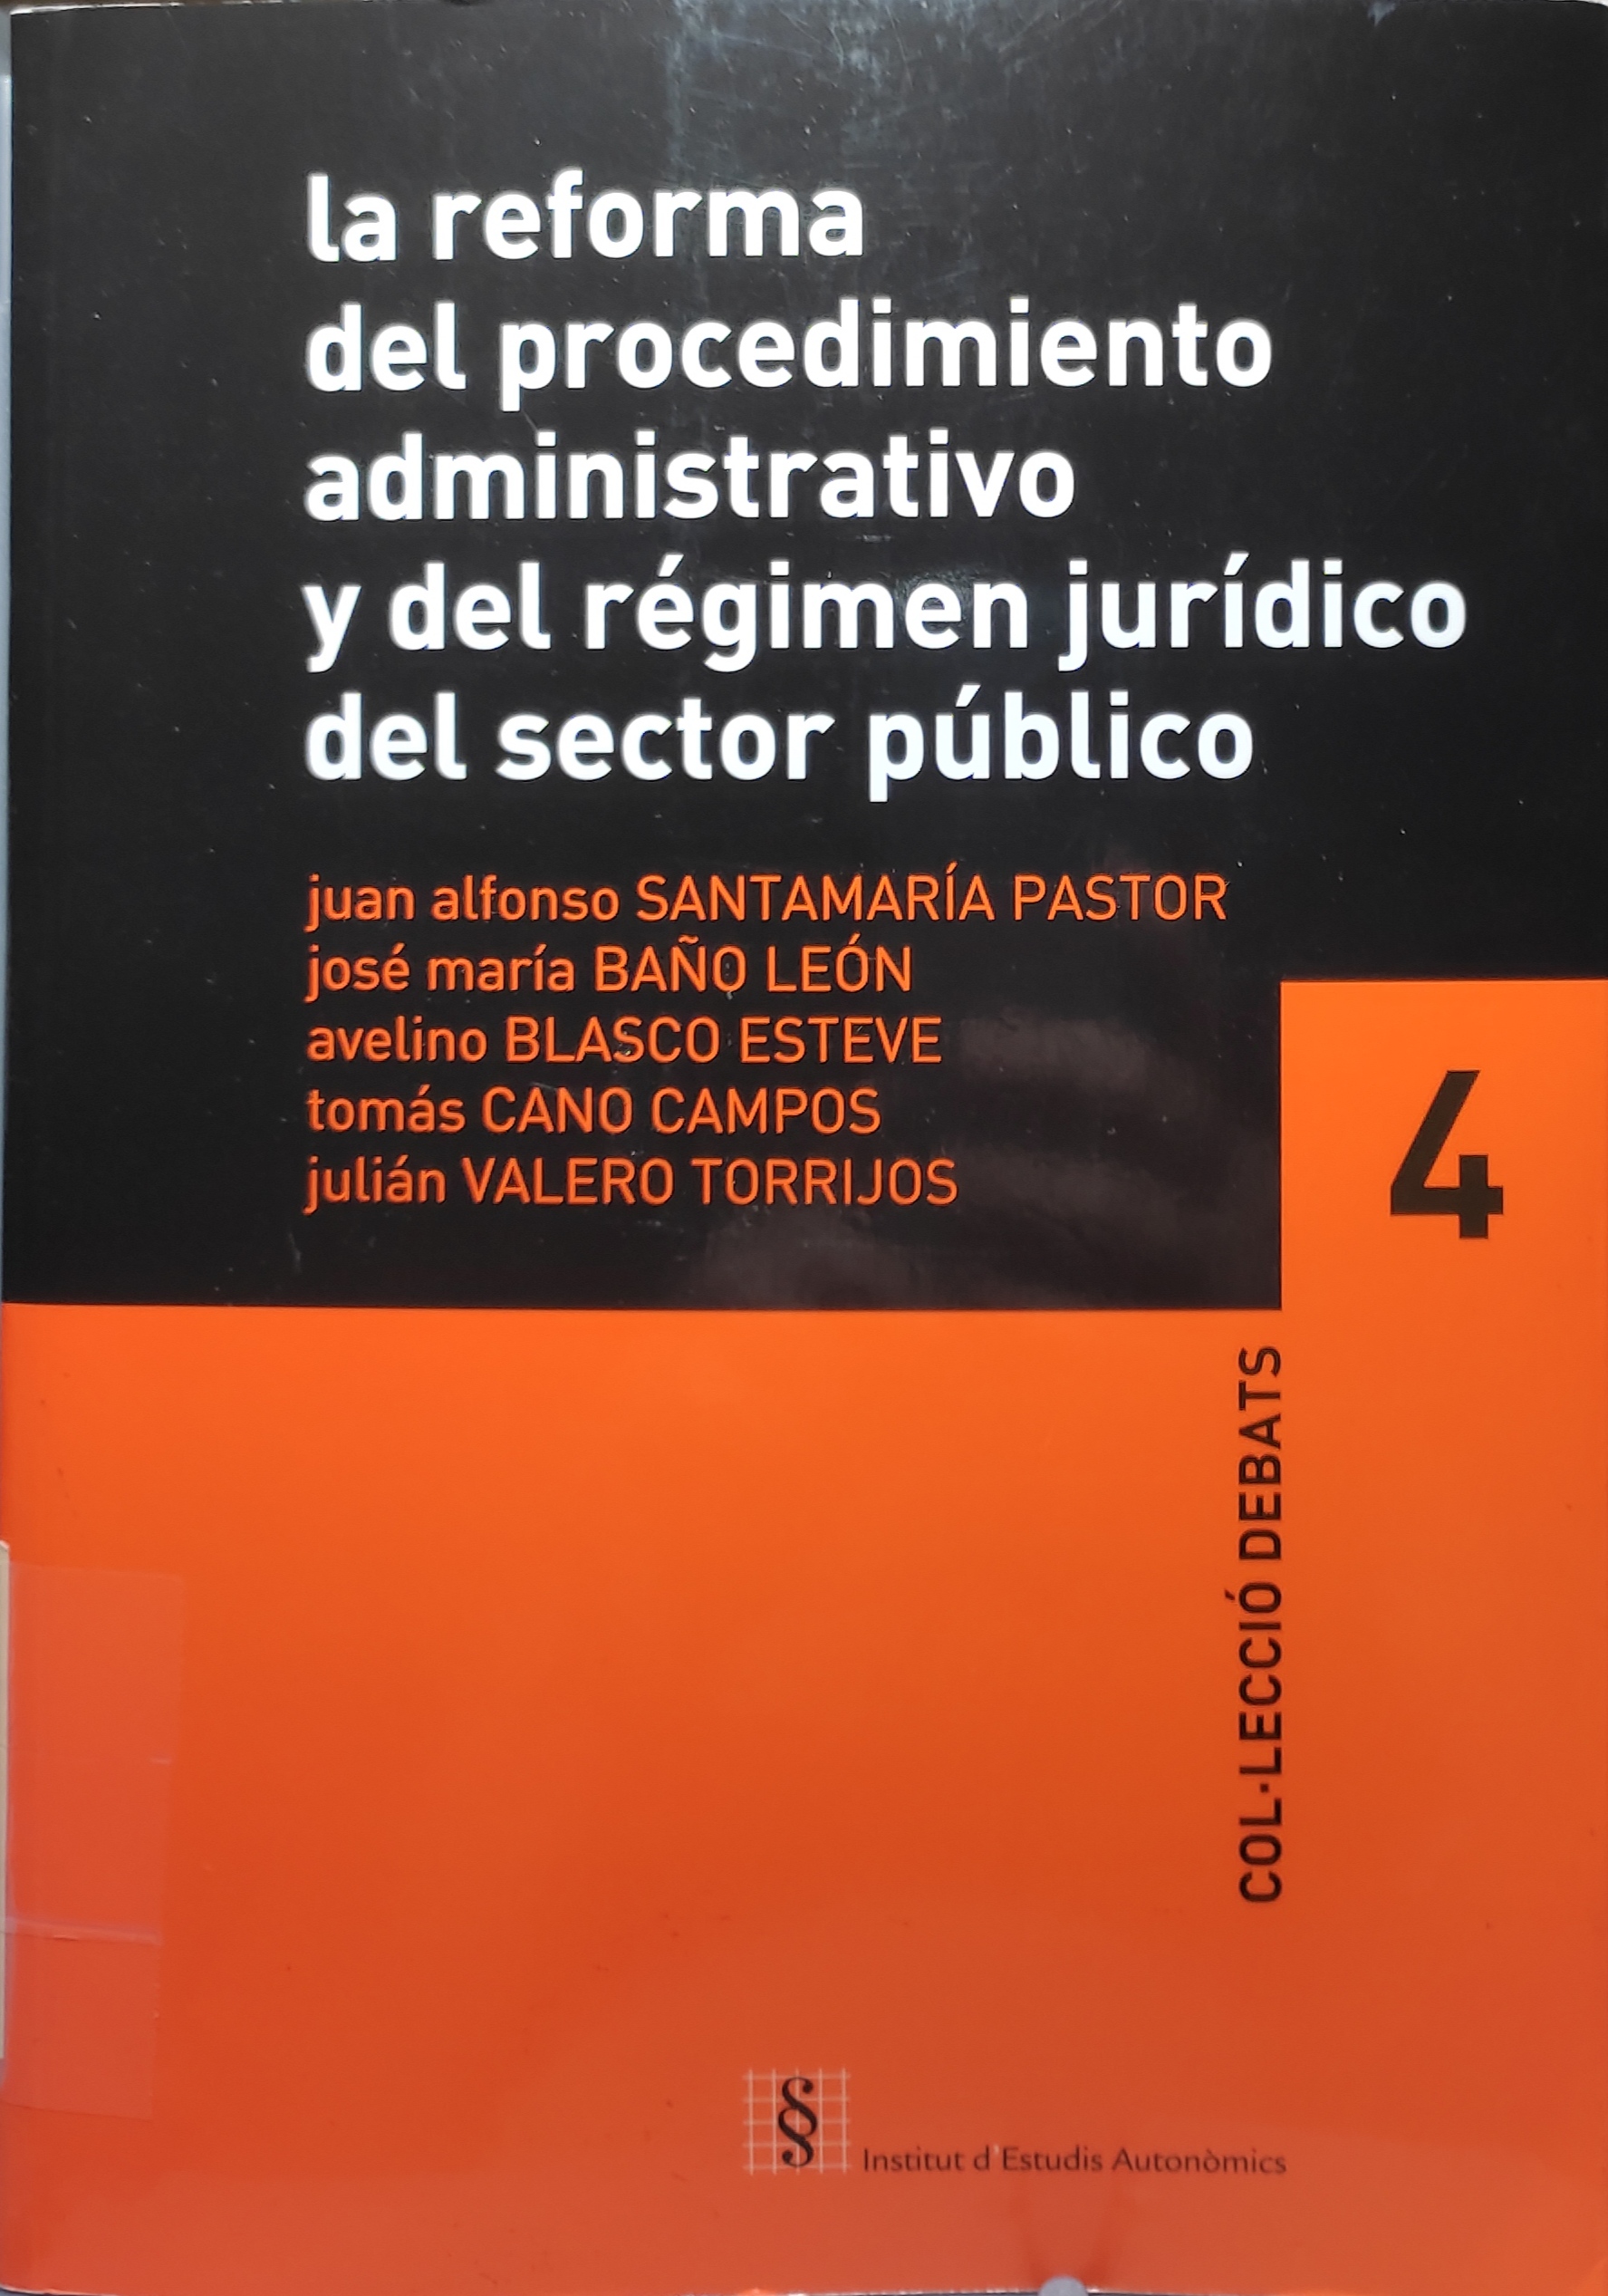 Imagen de portada del libro La reforma del procedimiento administrativo y del régimen jurídico del sector público